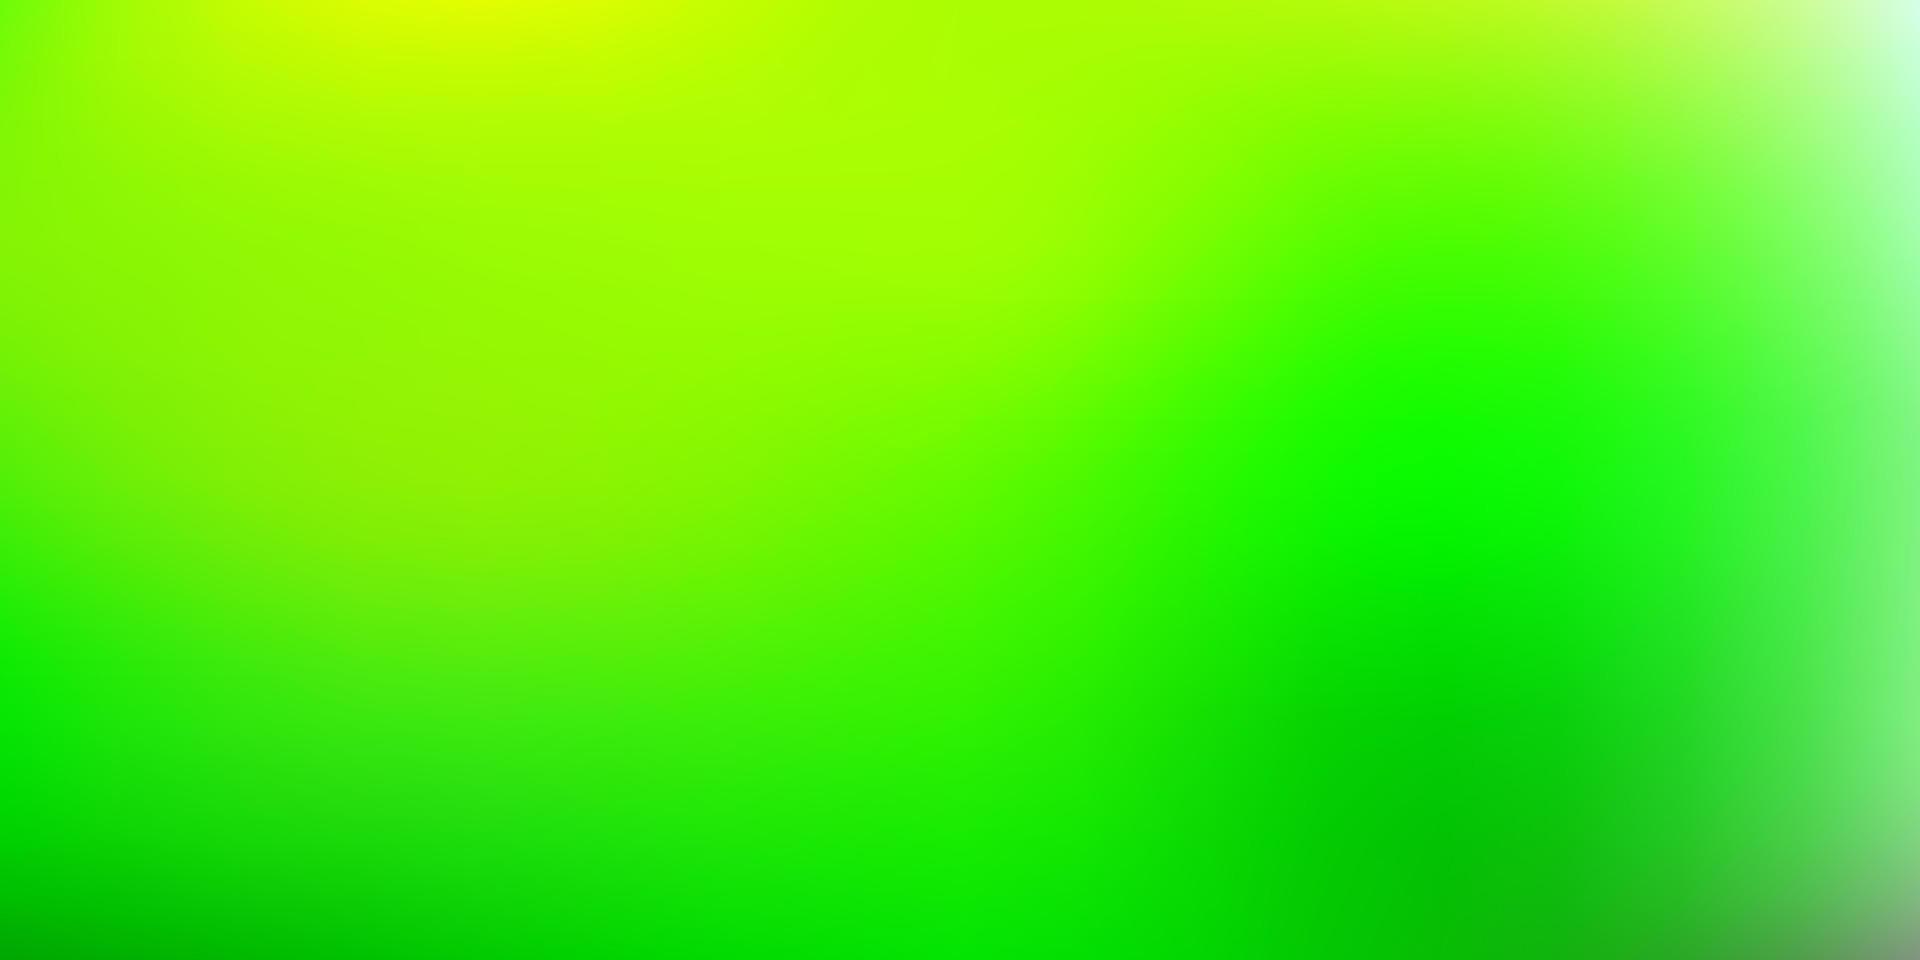 ljusgrön, gul suddighetsstruktur för vektor. vektor